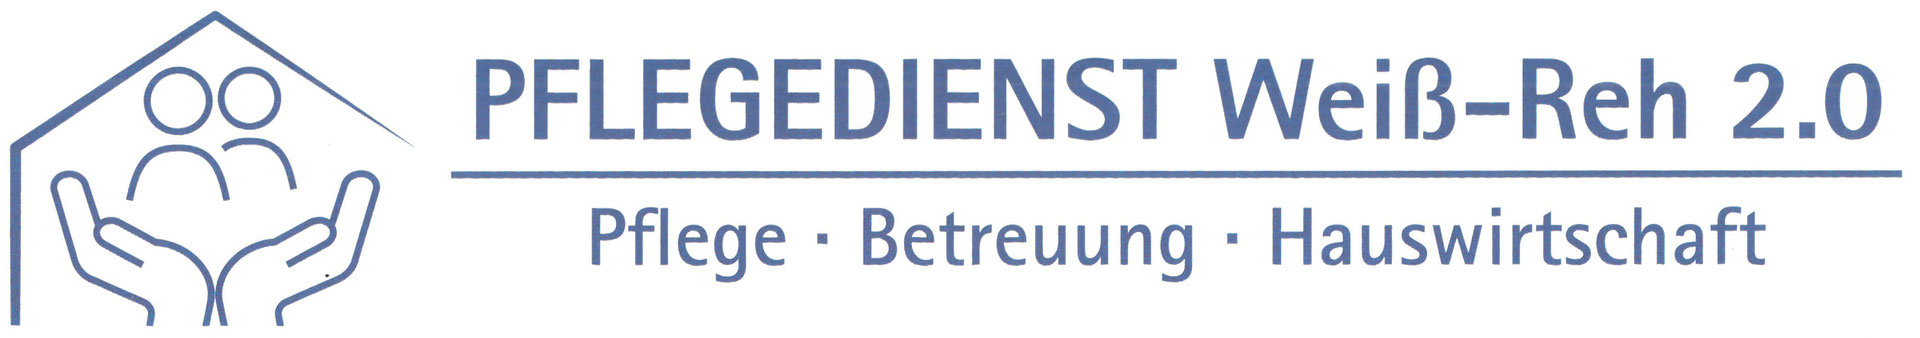 Logo: Pflegedienst Weiß-Reh